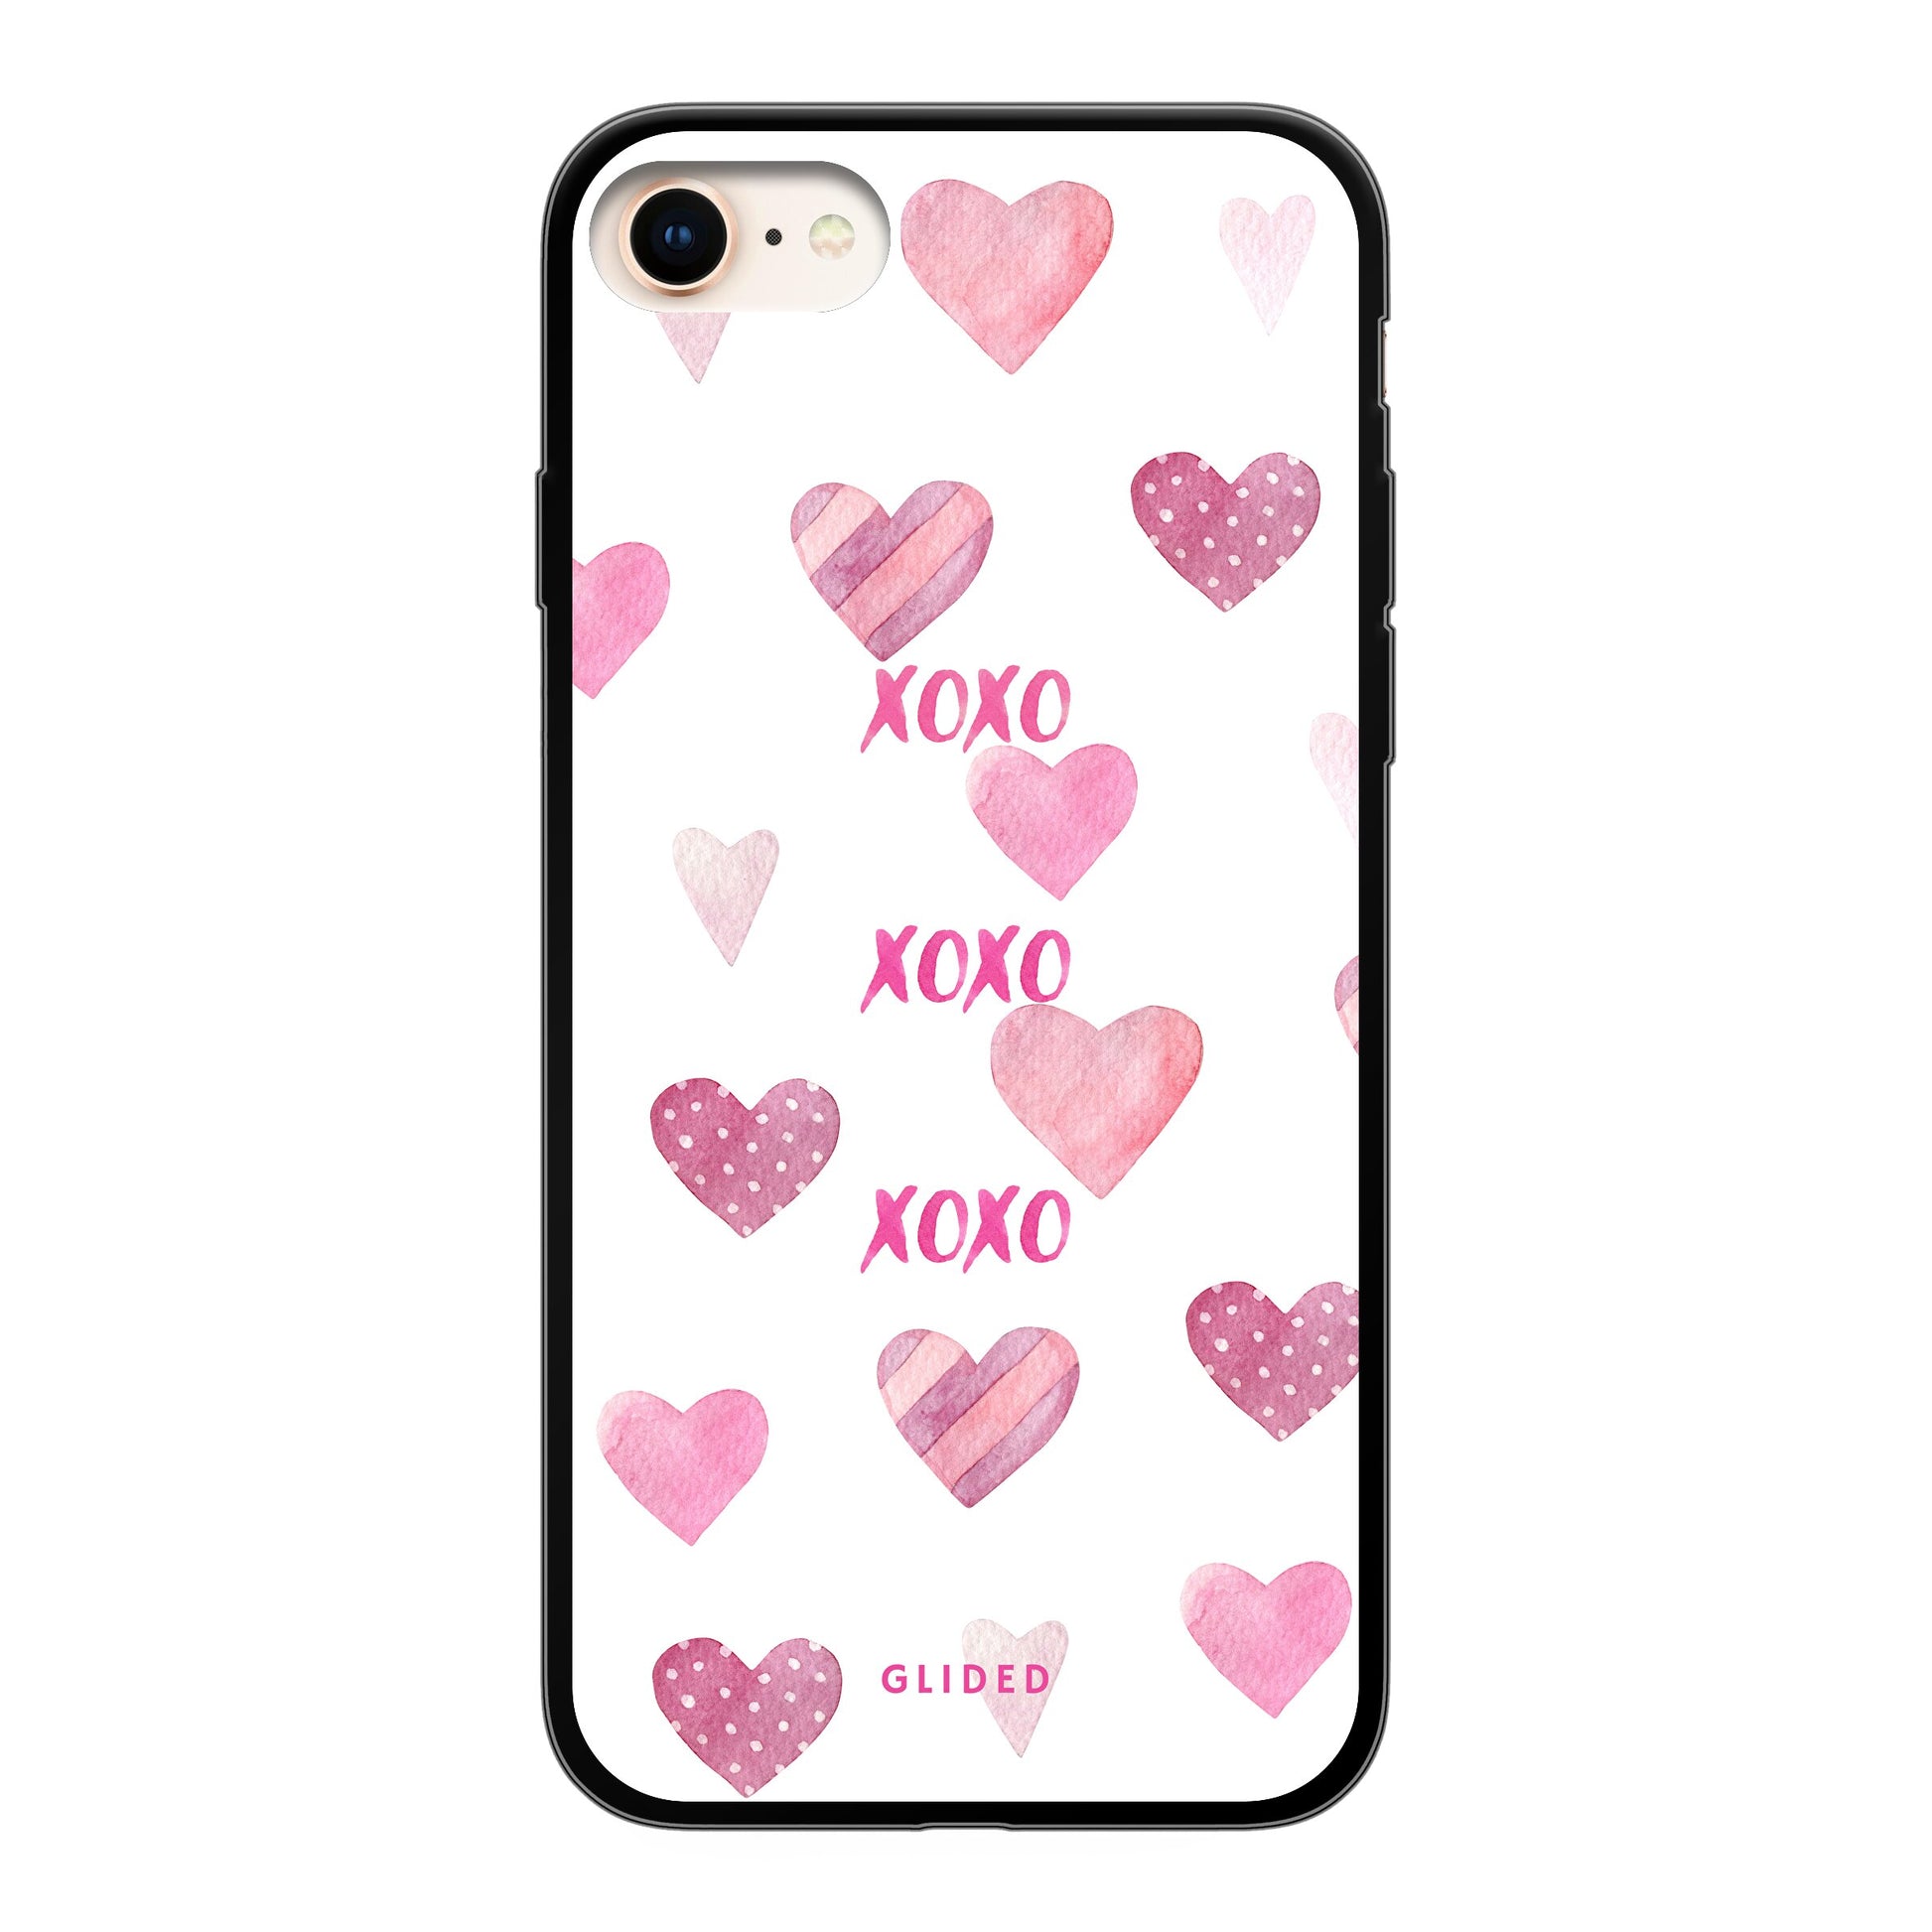 Xoxo - iPhone SE 2022 - Soft case